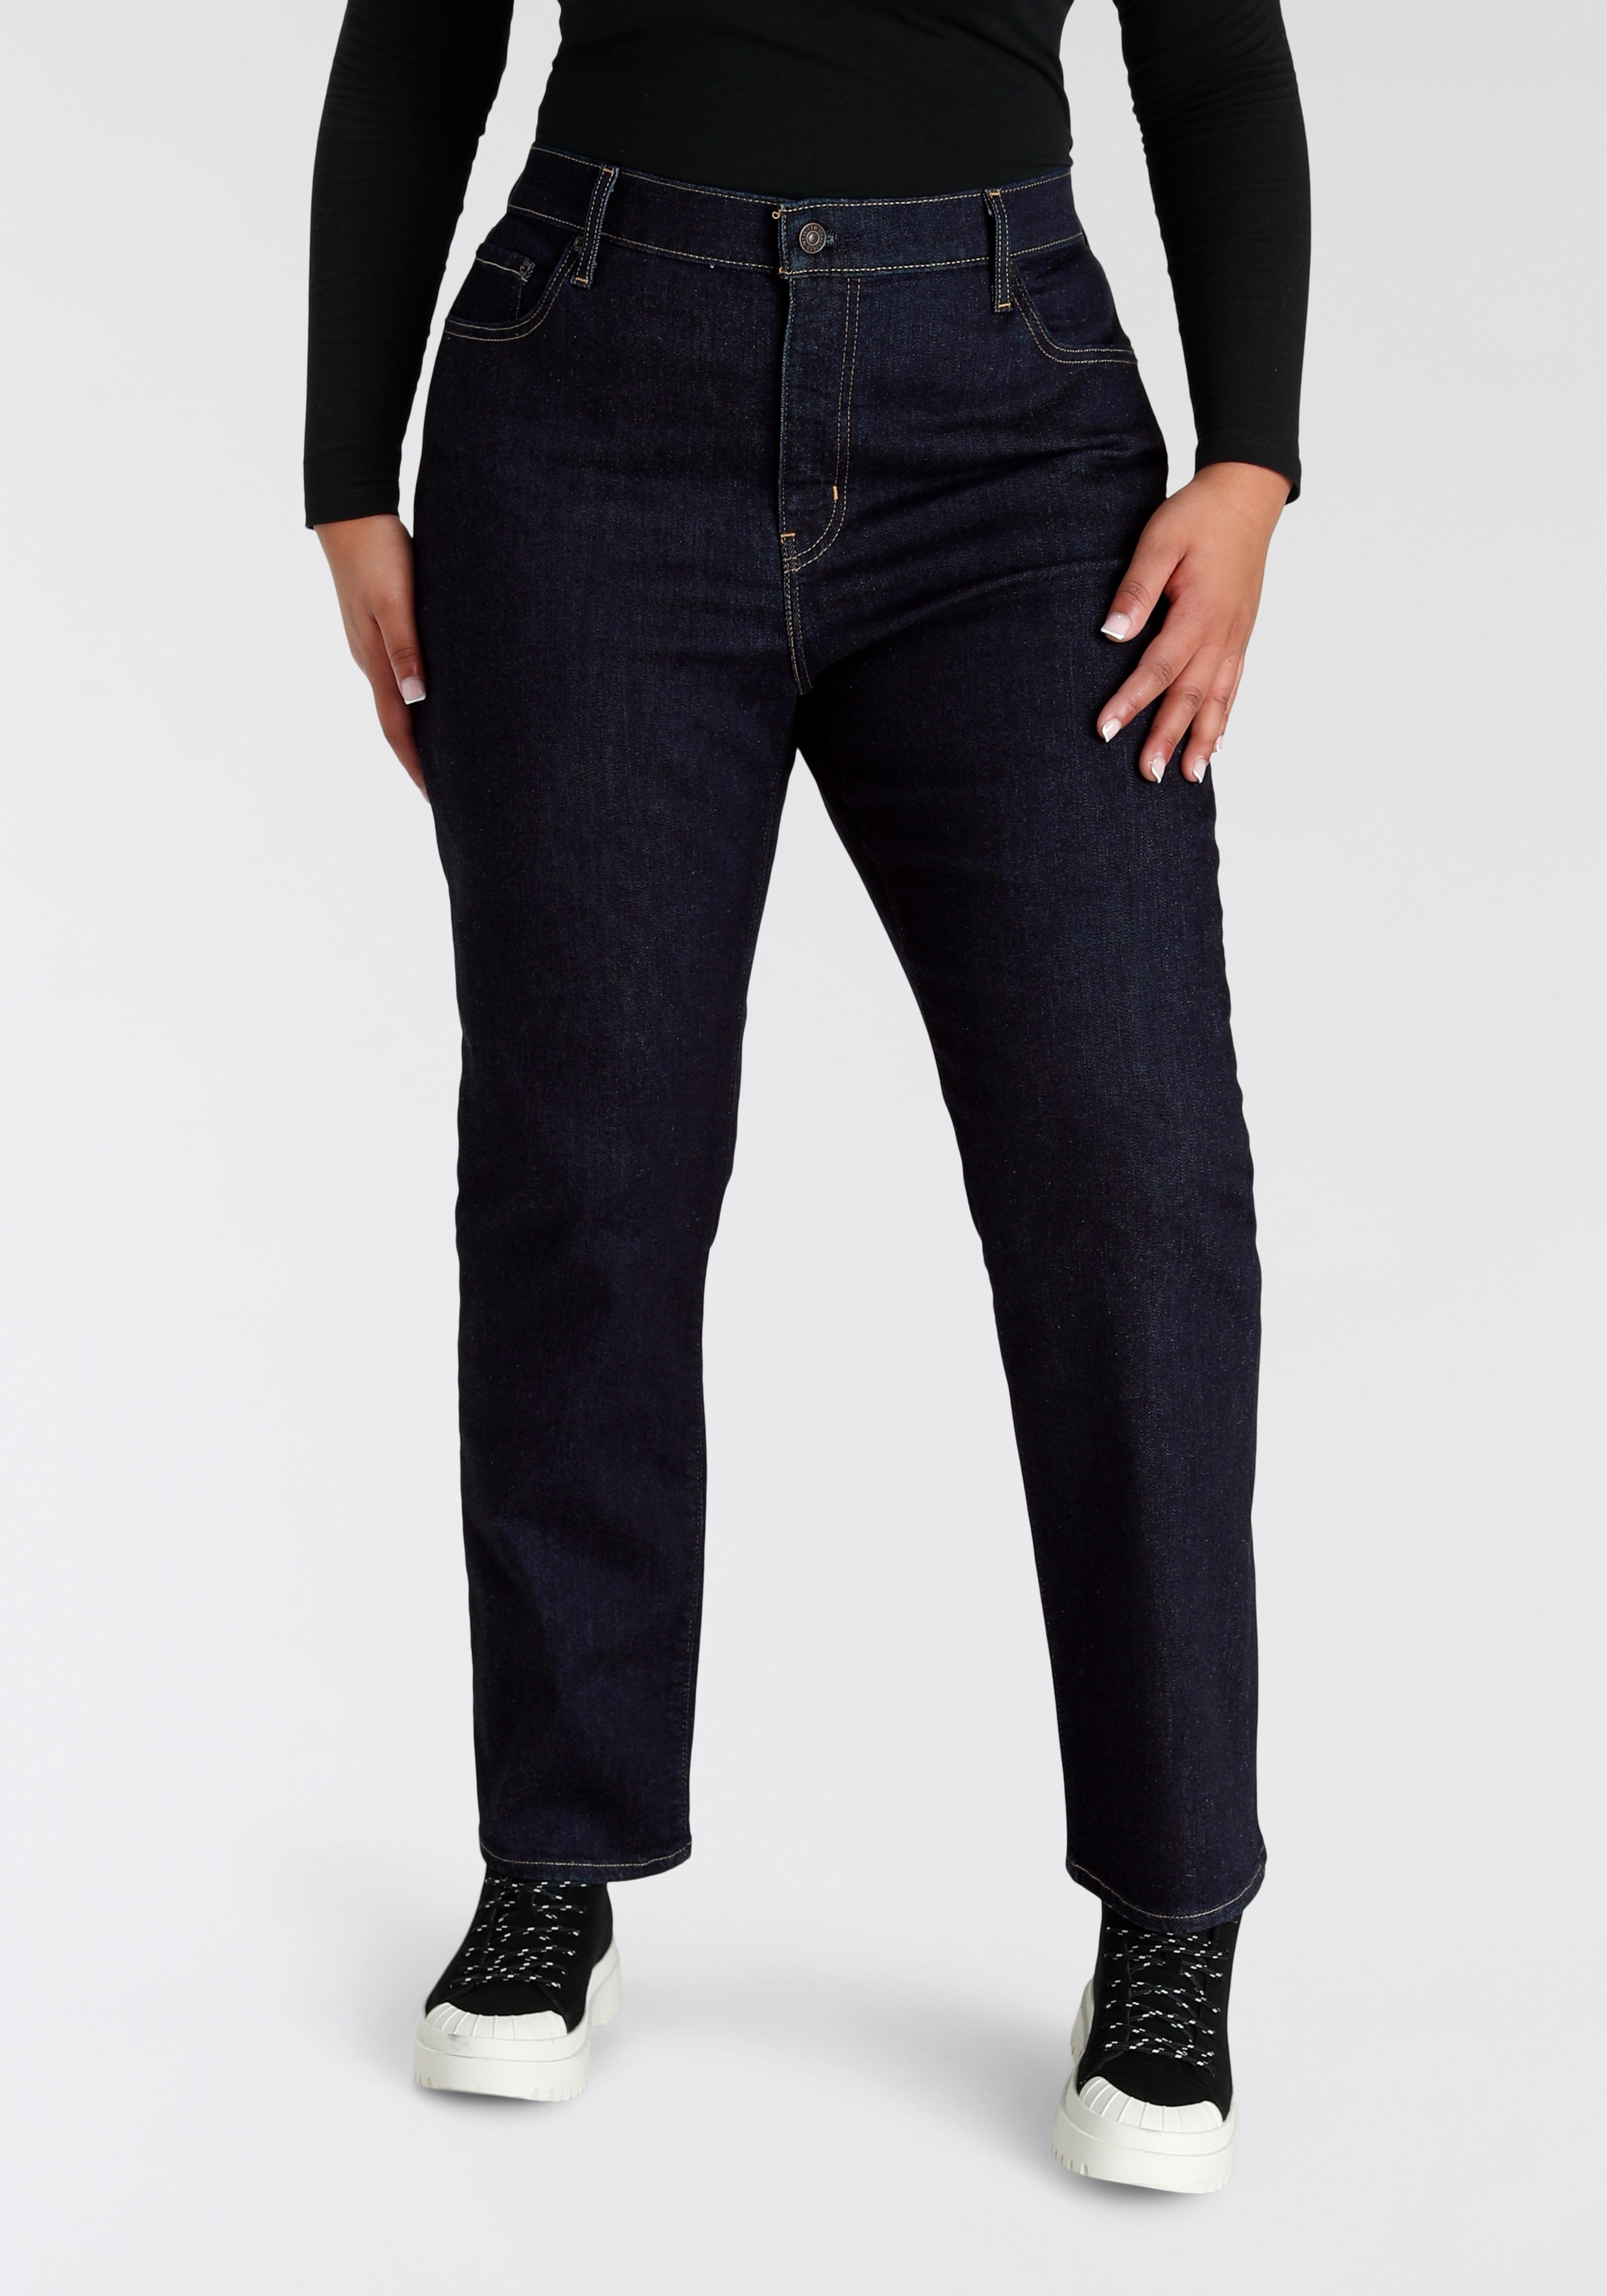 Straight-Jeans LEVI'S PLUS "724 PL HR STRAIGHT" Gr. 16 (46), Länge 30, schwarz (dark rinse) Damen Jeans Gerade